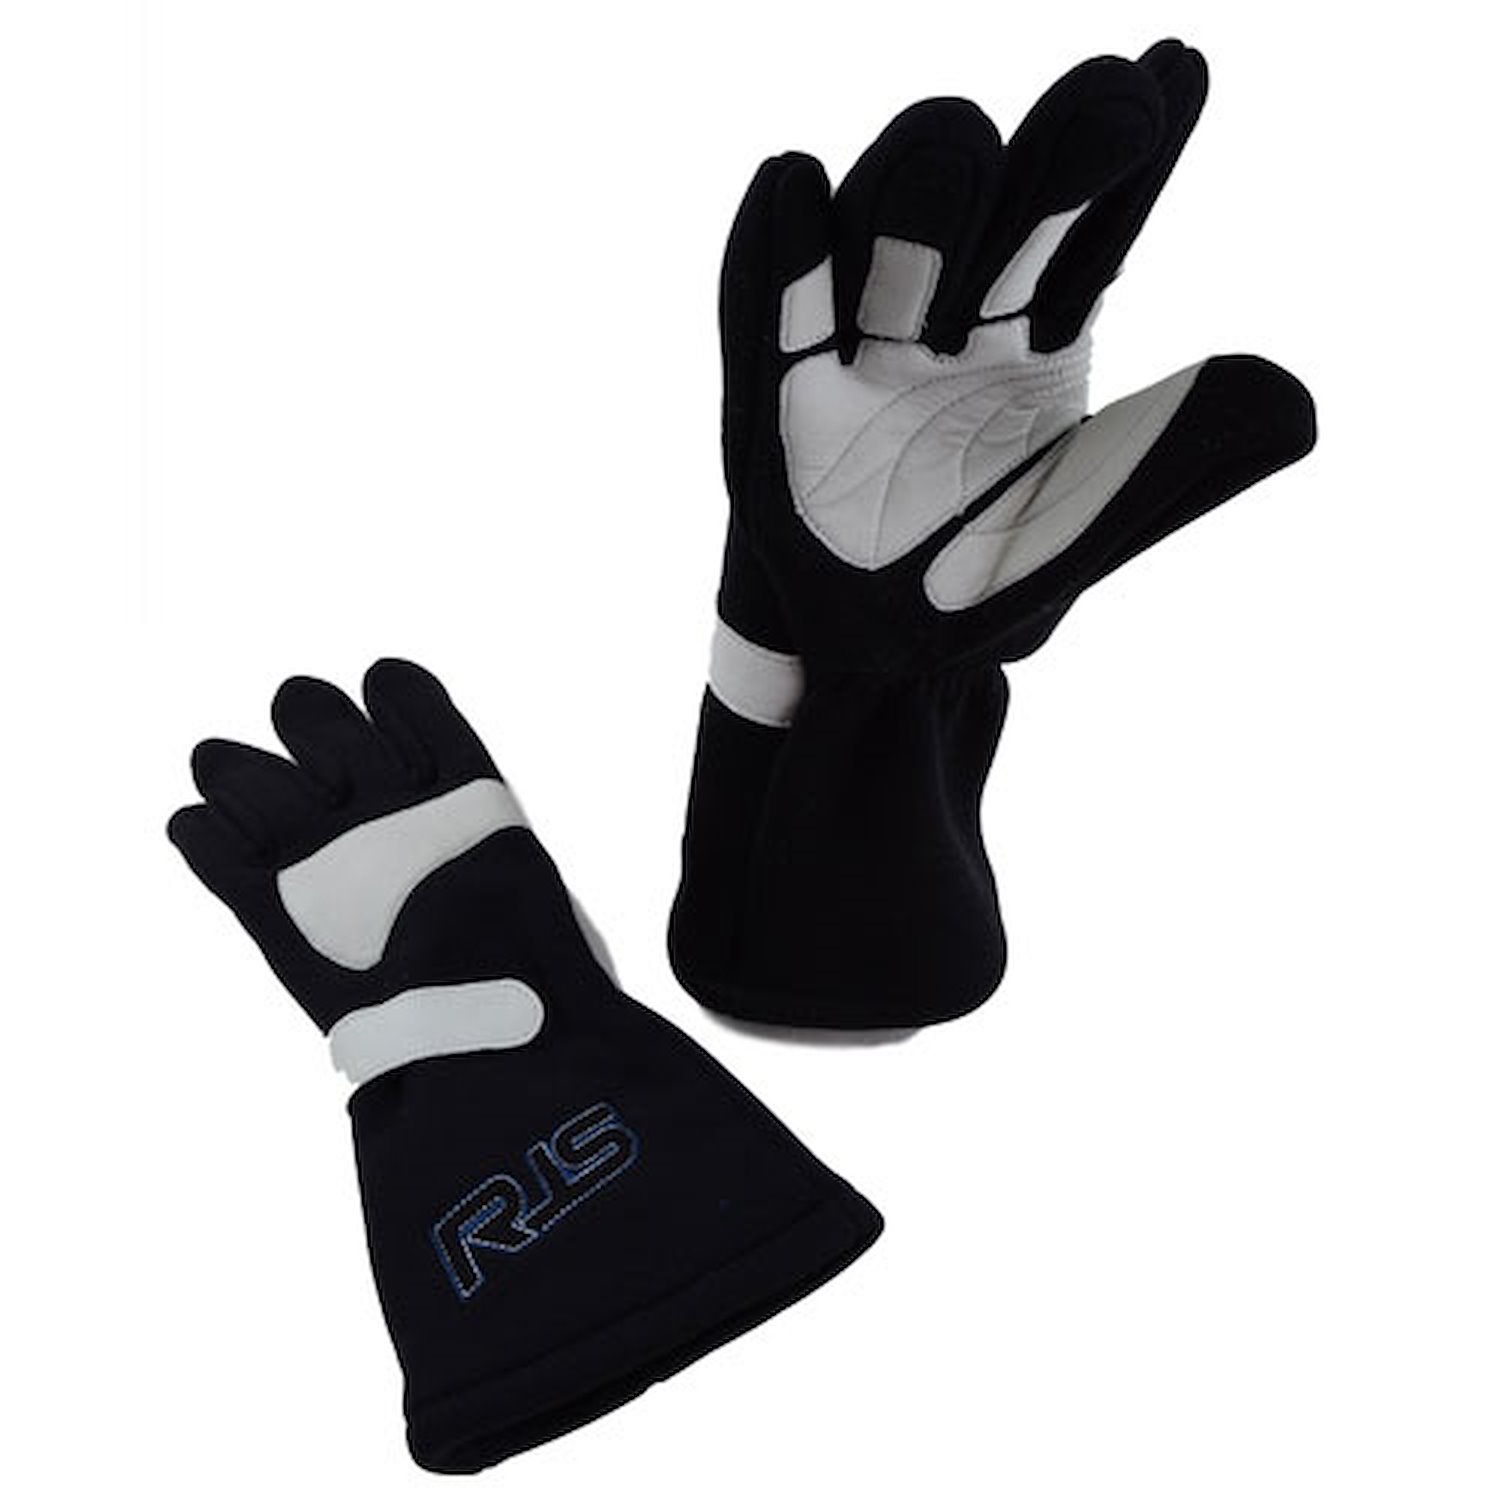 SFI 20 Racing Gloves X-Large